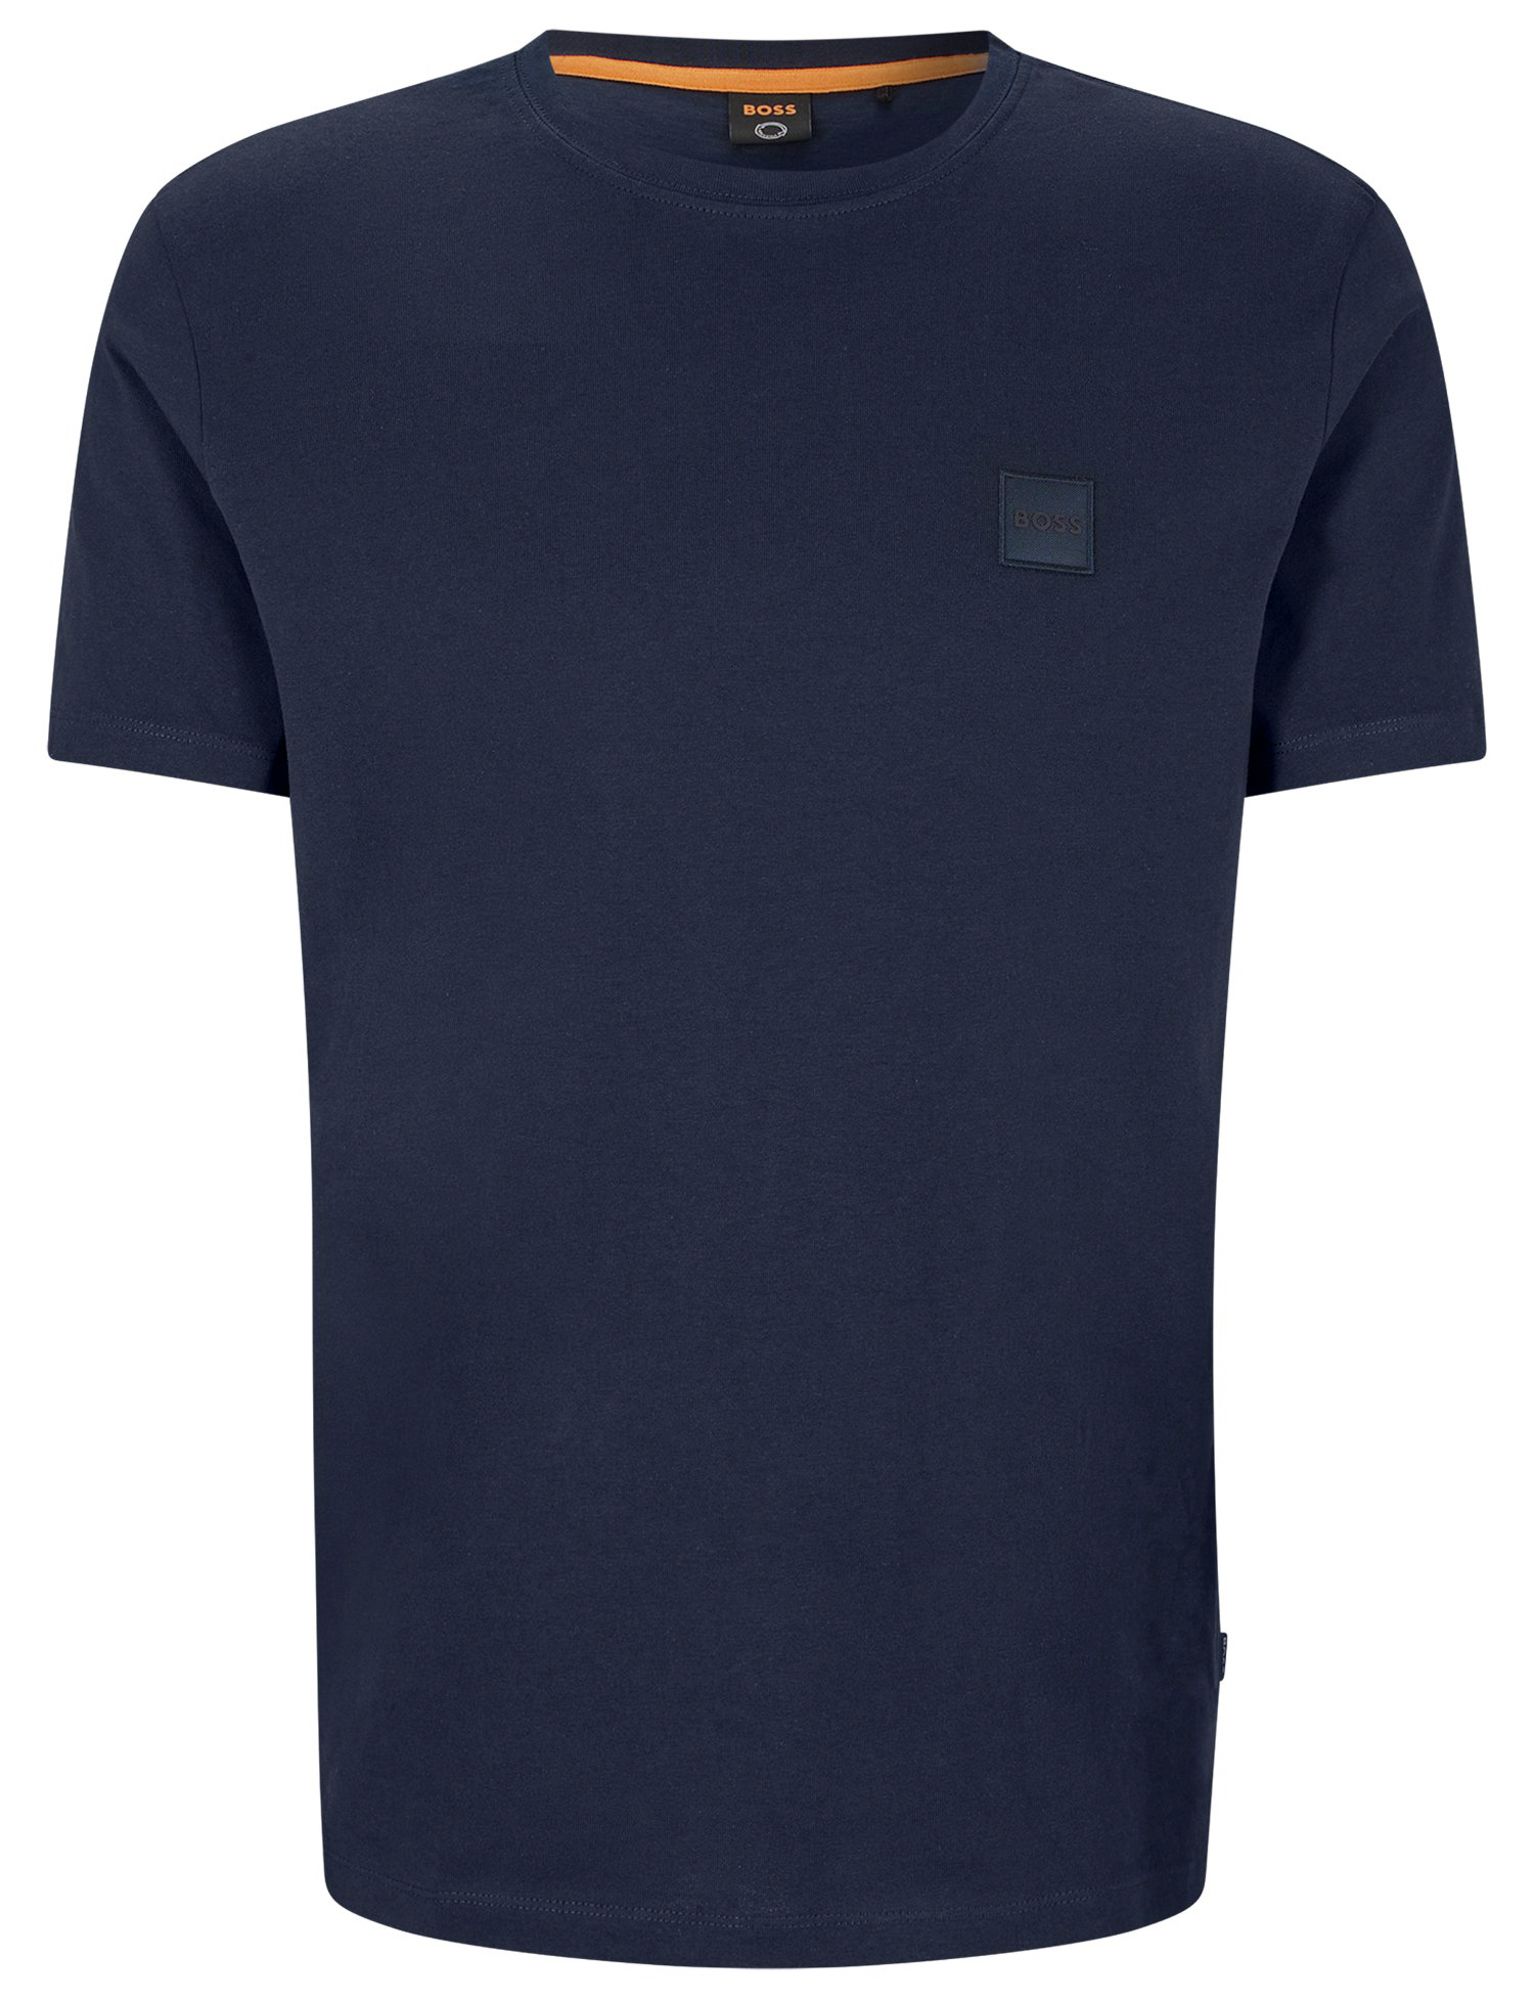 Hugo Boss Menswear Tales T-shirt KM Blauw 083371-002-L